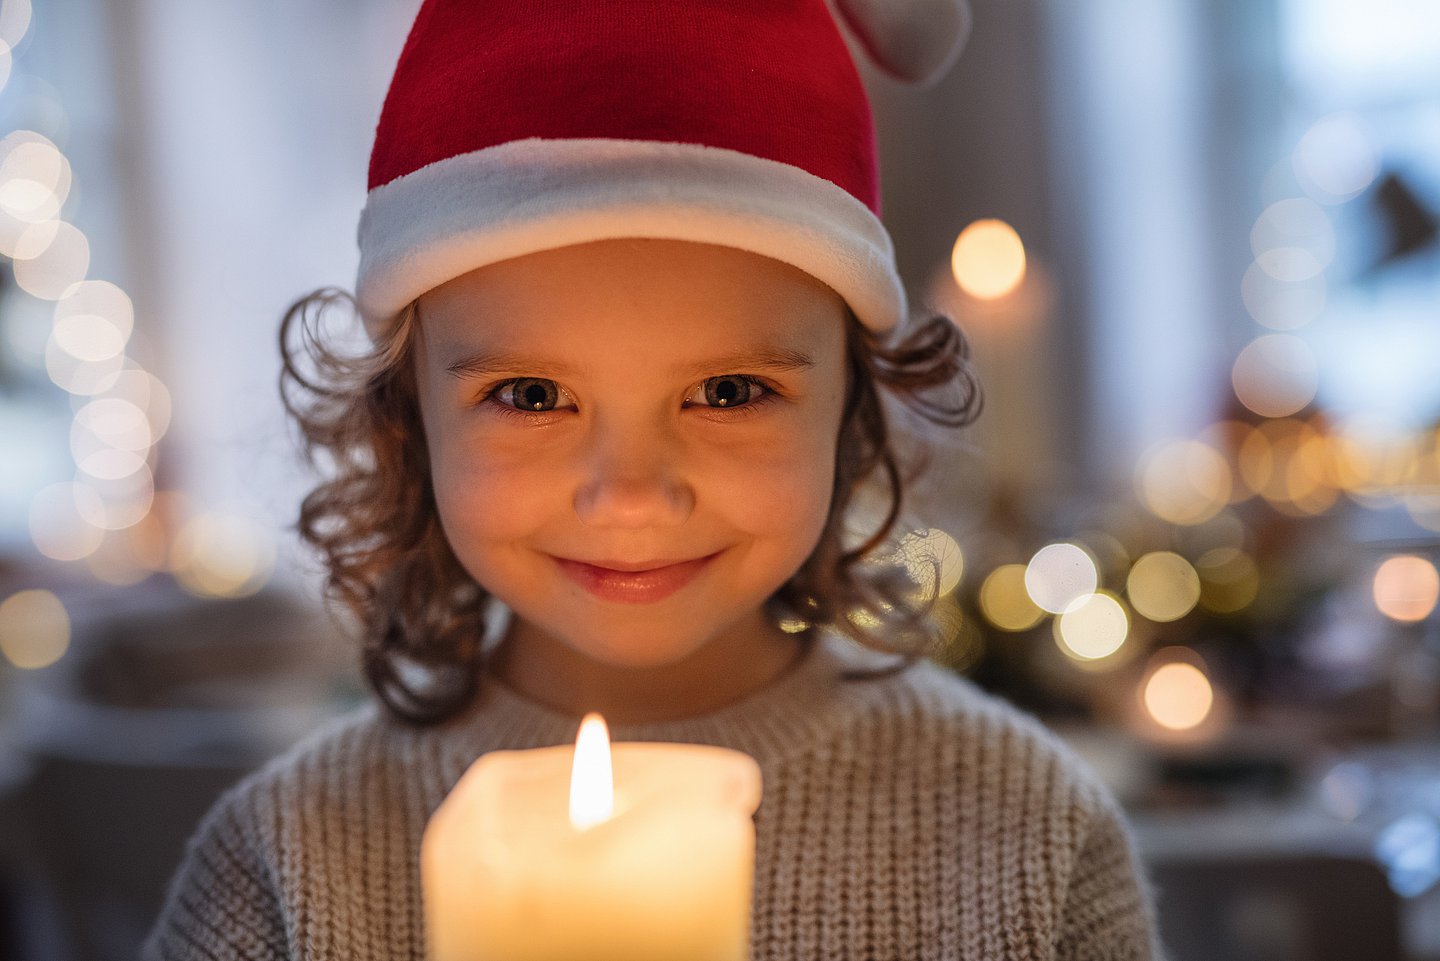 Ein kleines Mädchen, das eine rote Nikolausmütze auf dem Kopf trägt, steht vor einer brennenden Kerze oder hält diese in der Hand. Sie freut sich und schaut lächelnd in die Kamera.